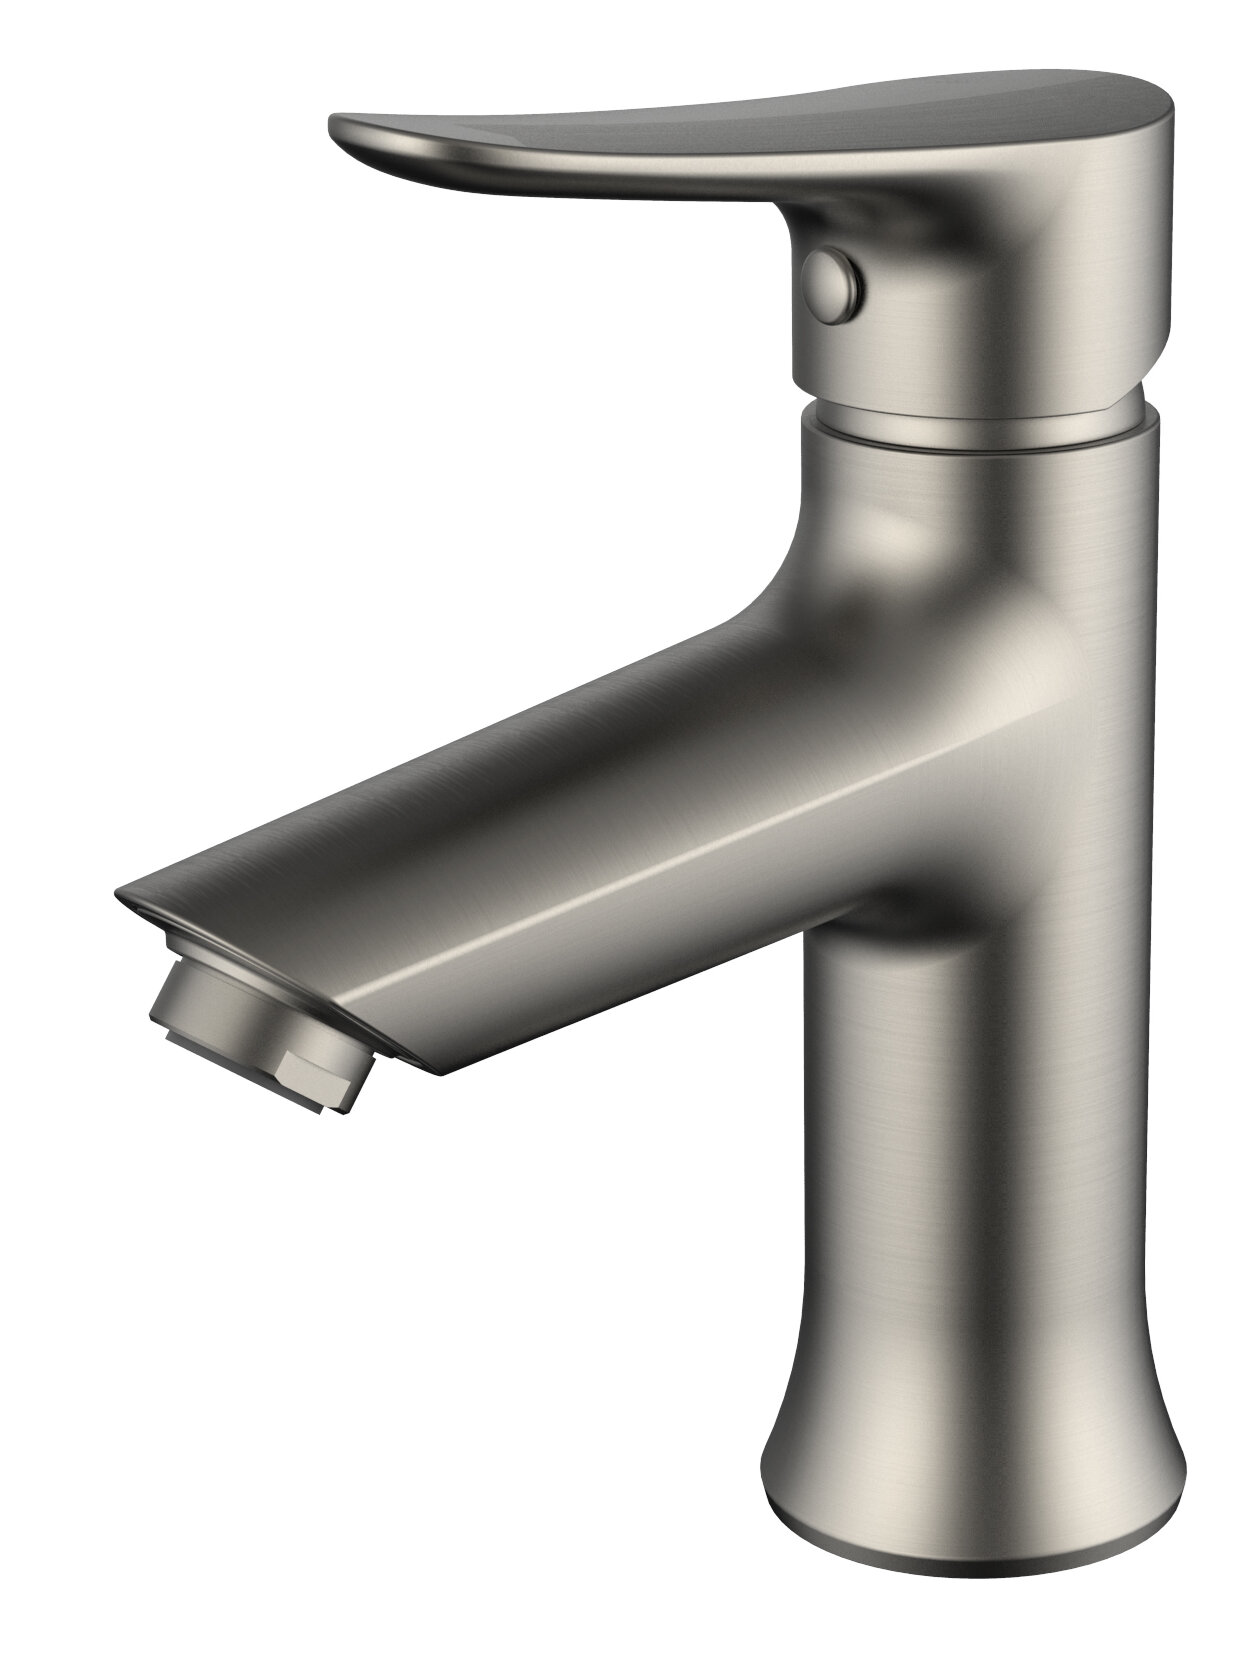 Daweier Single Hole Bathroom Faucet With Drain Assembly Wayfair